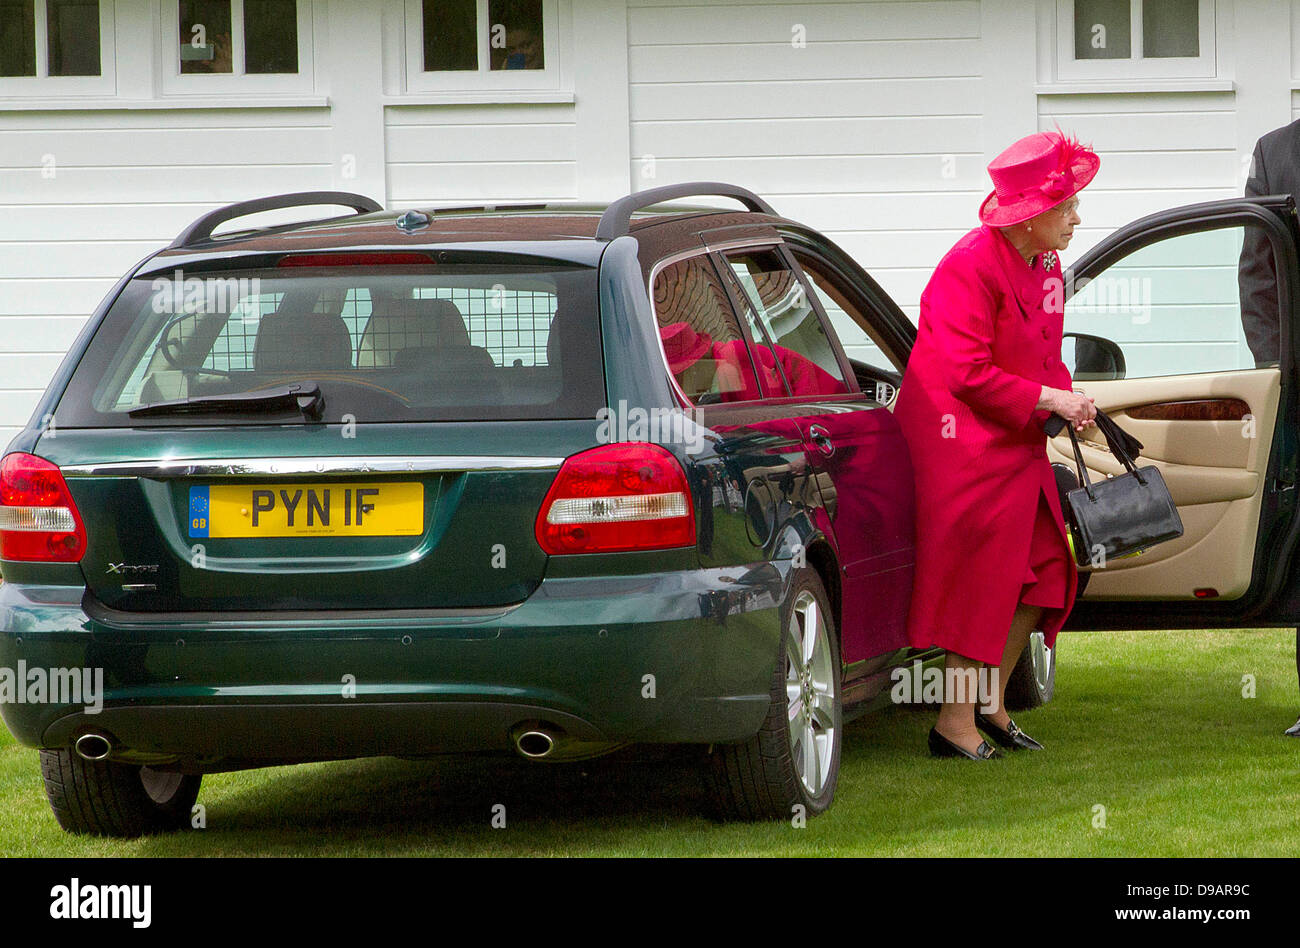 Egham, UK. 16 Juin, 2013. La Grande-Bretagne La reine Elizabeth II arrive dans une voiture conduite par elle-même pour la finale de la coupe de la Reine Cartier au Guards Polo Club à Egham, 16 juin 2013. Photo : Albert/Nieboerdpa Alamy Live News Banque D'Images